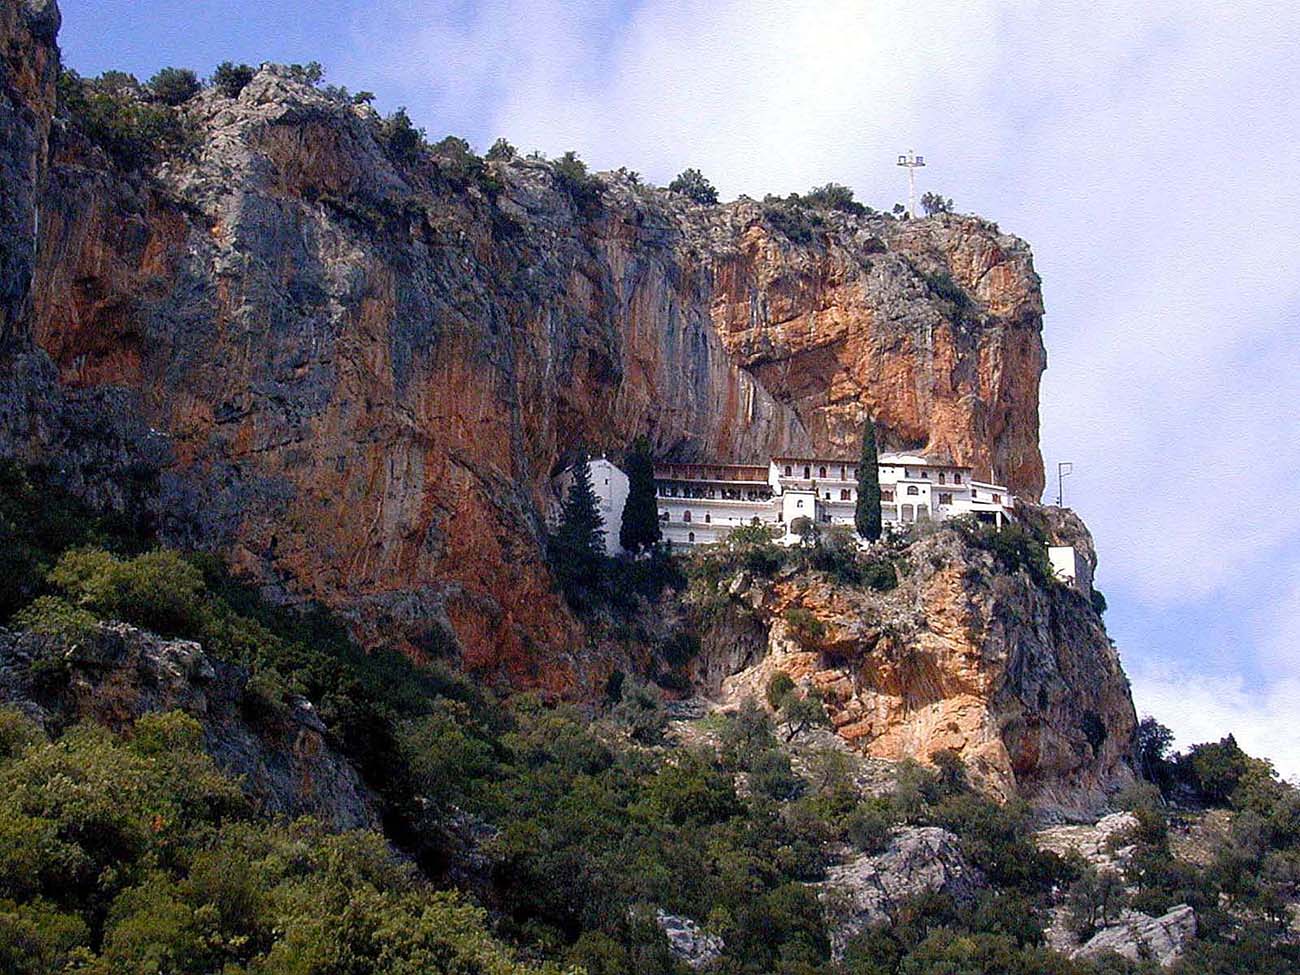 Παναγία Έλωνα: Το εντυπωσιακό μοναστήρι που είναι σφηνωμένο στον κόκκινο βράχο